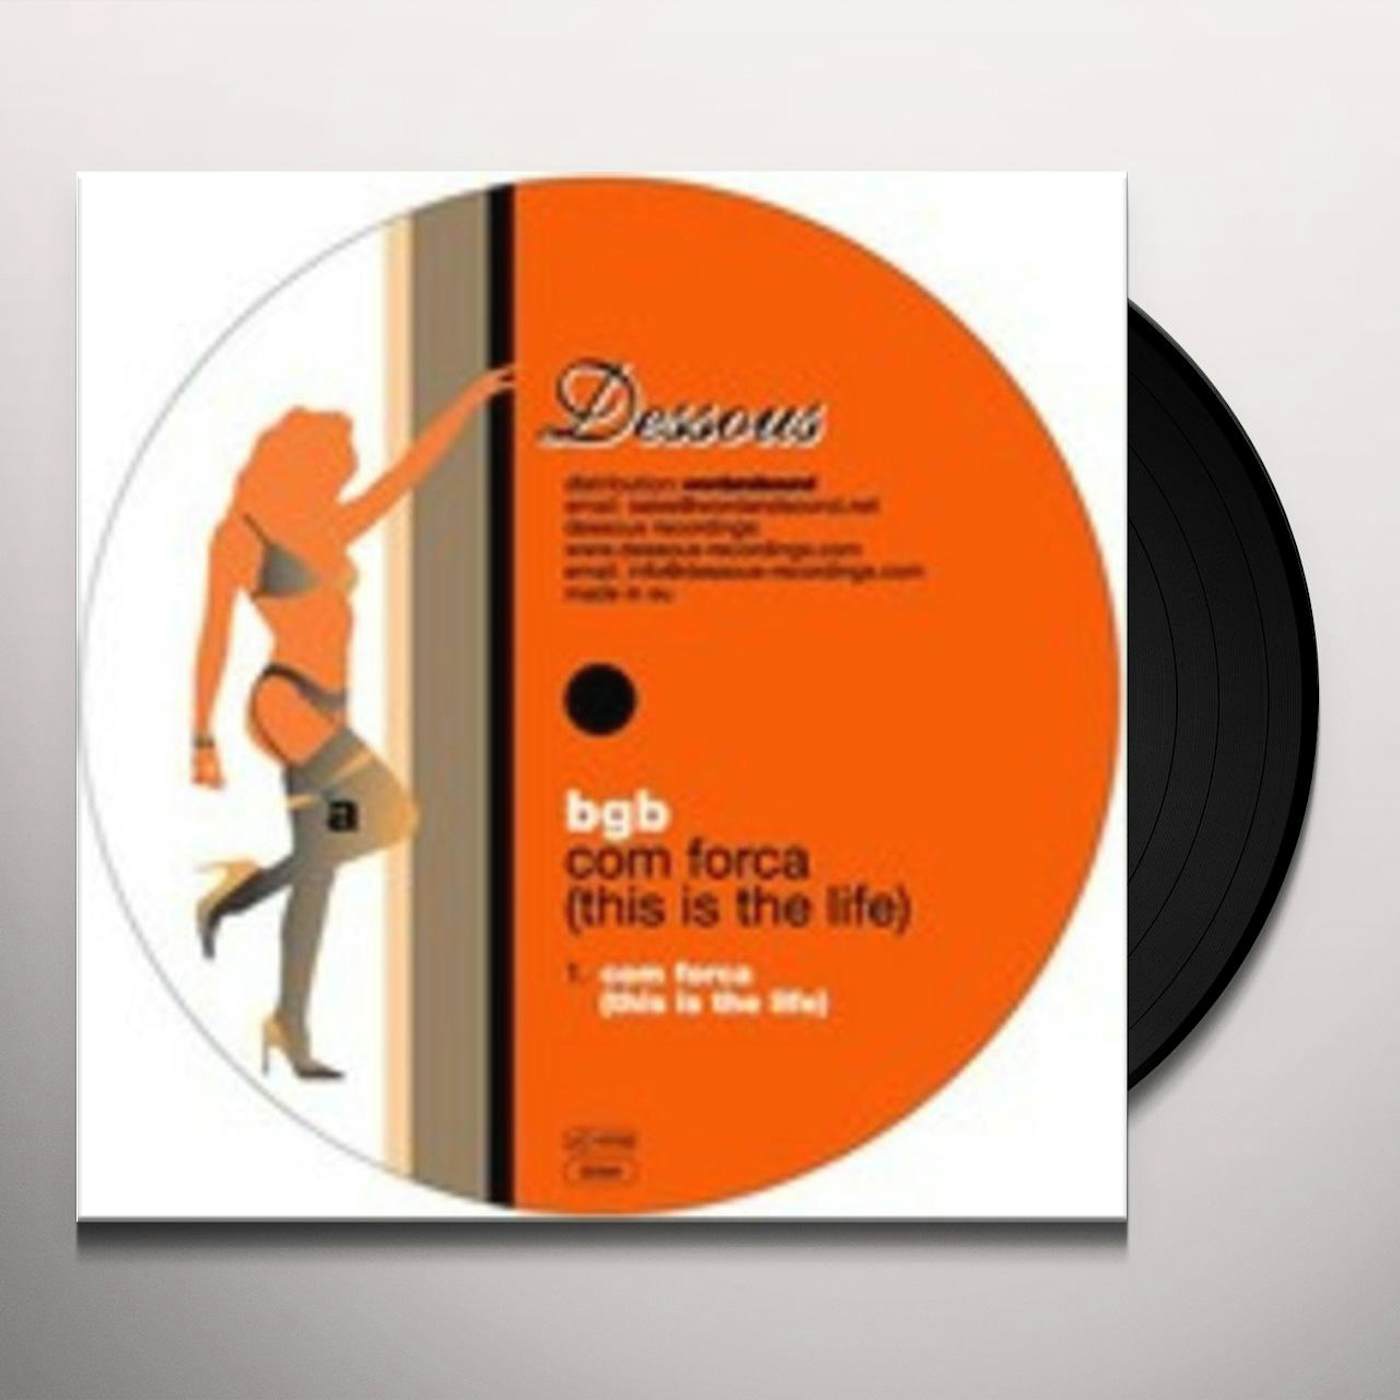 bgb COM FORCA Vinyl Record